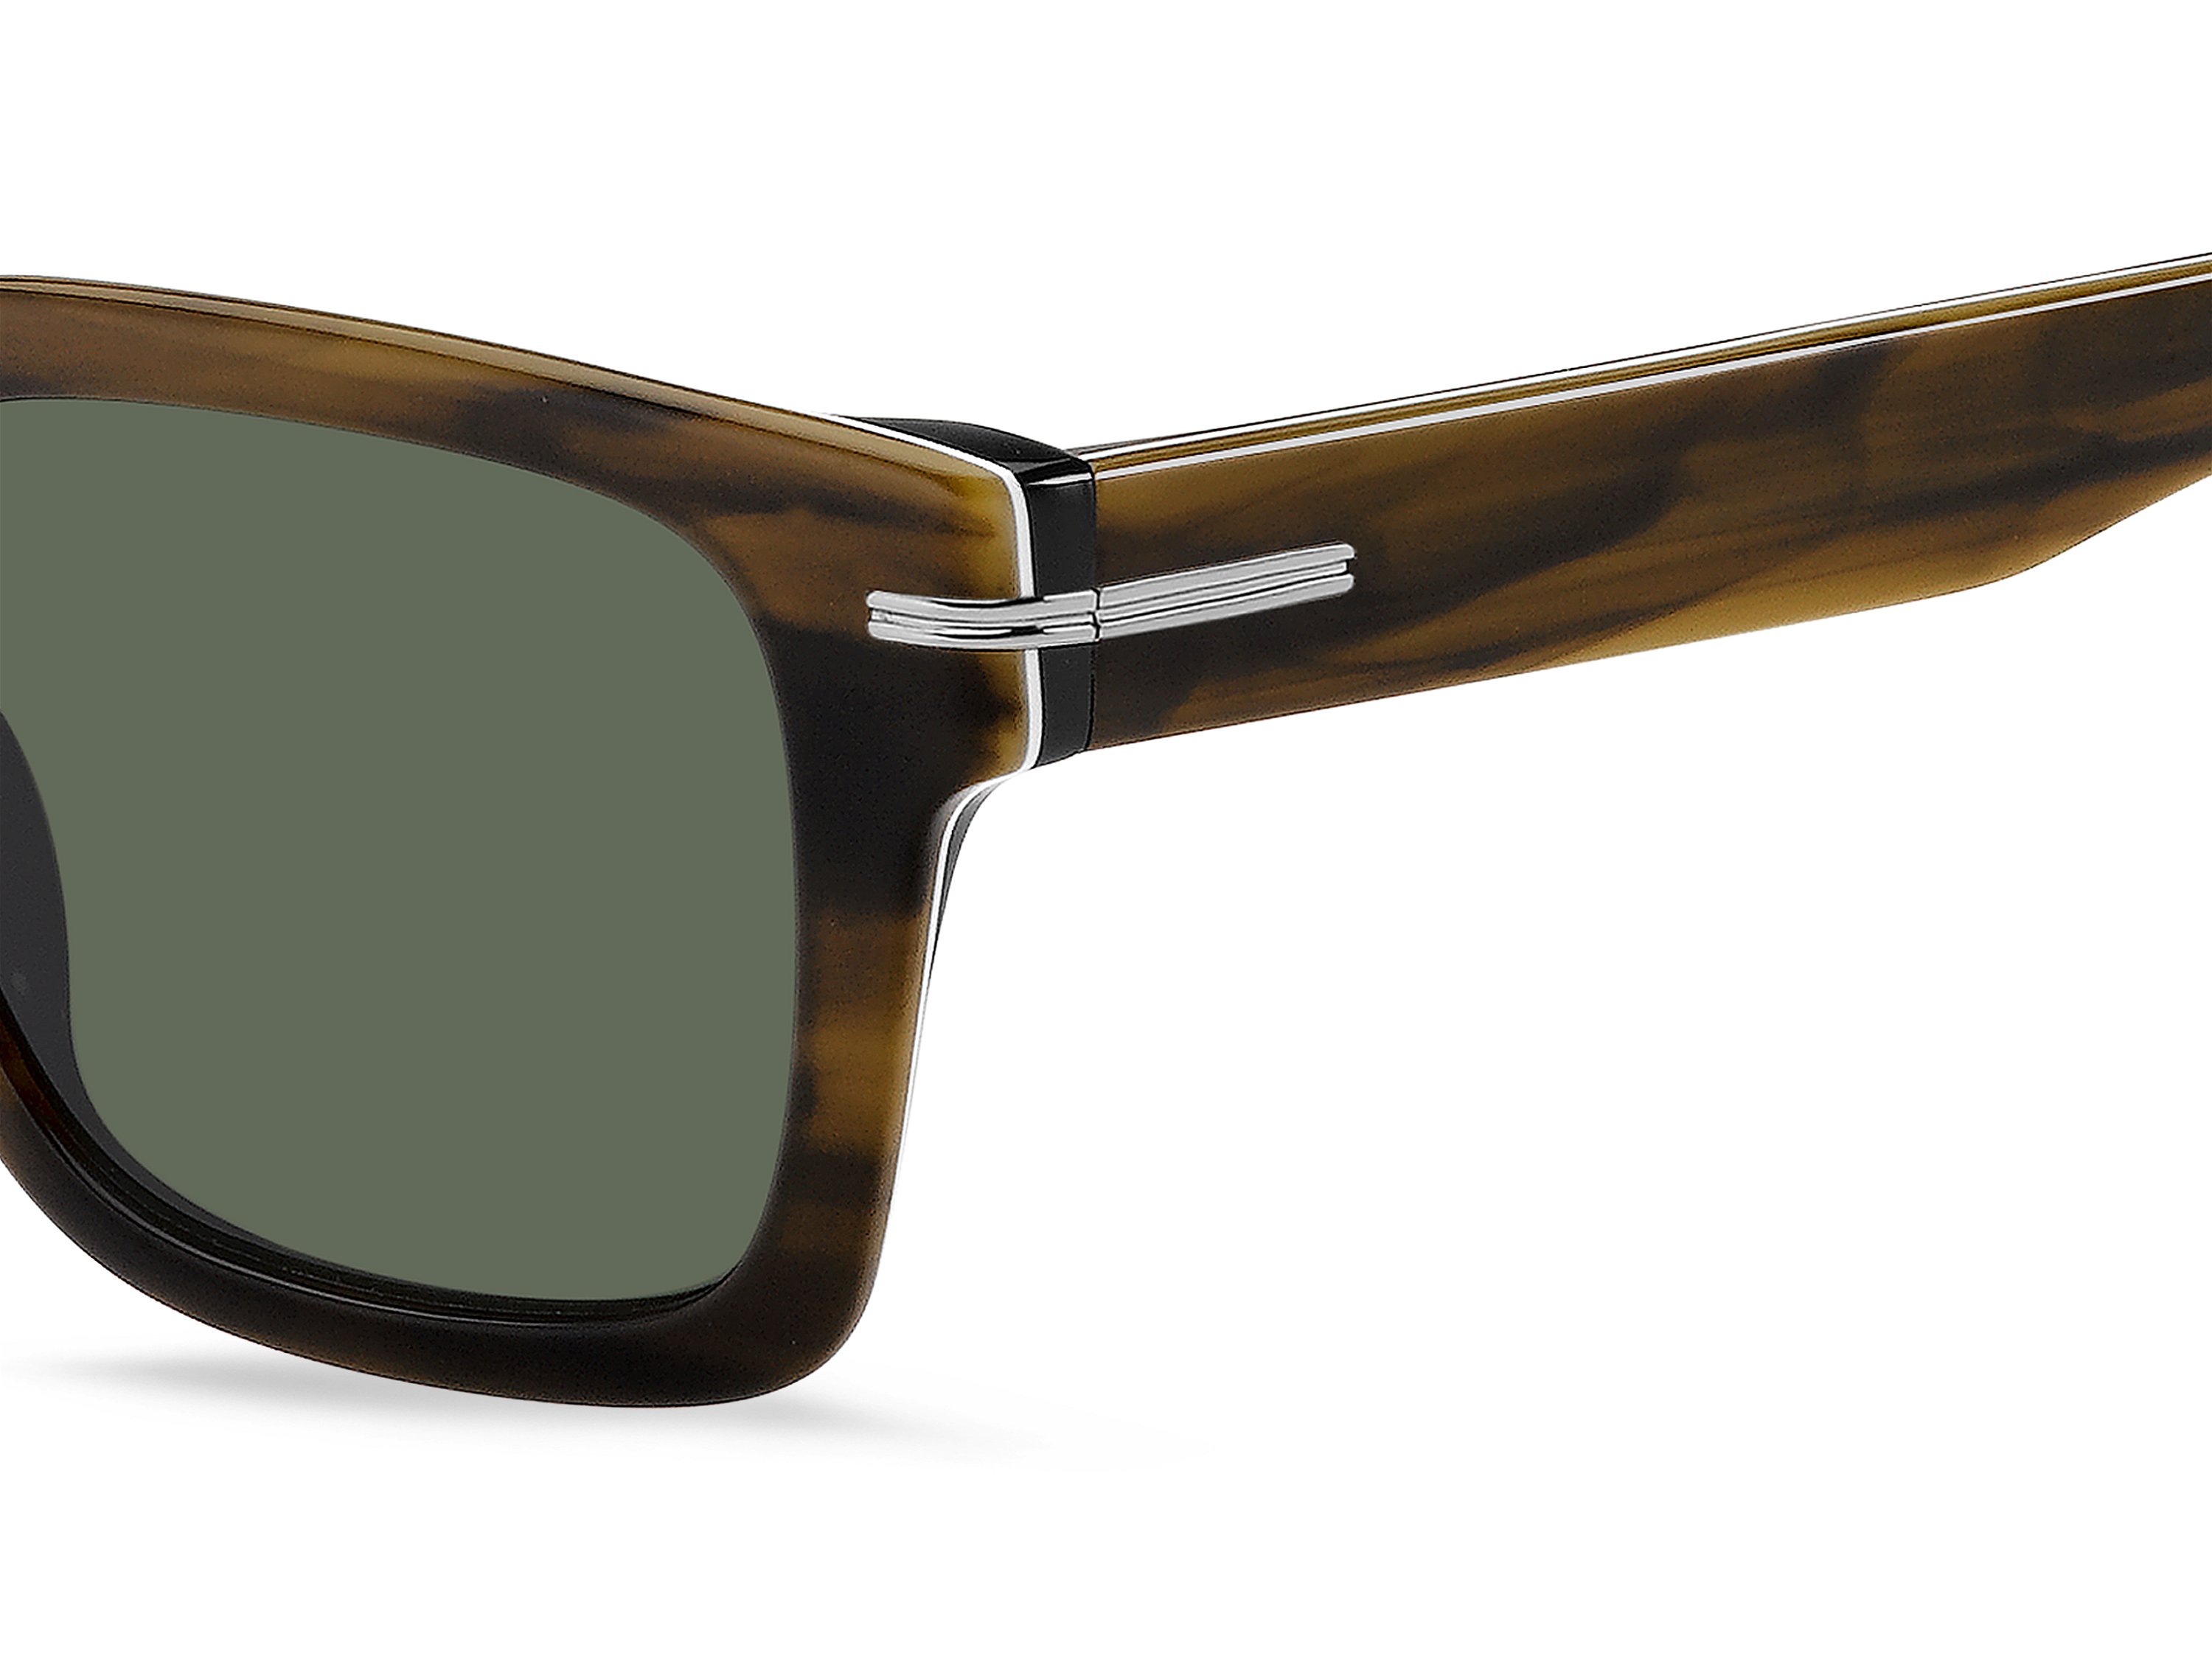 Das Bild zeigt die Sonnenbrille BOSS1625S 8AS von der Marke BOSS in Braun.